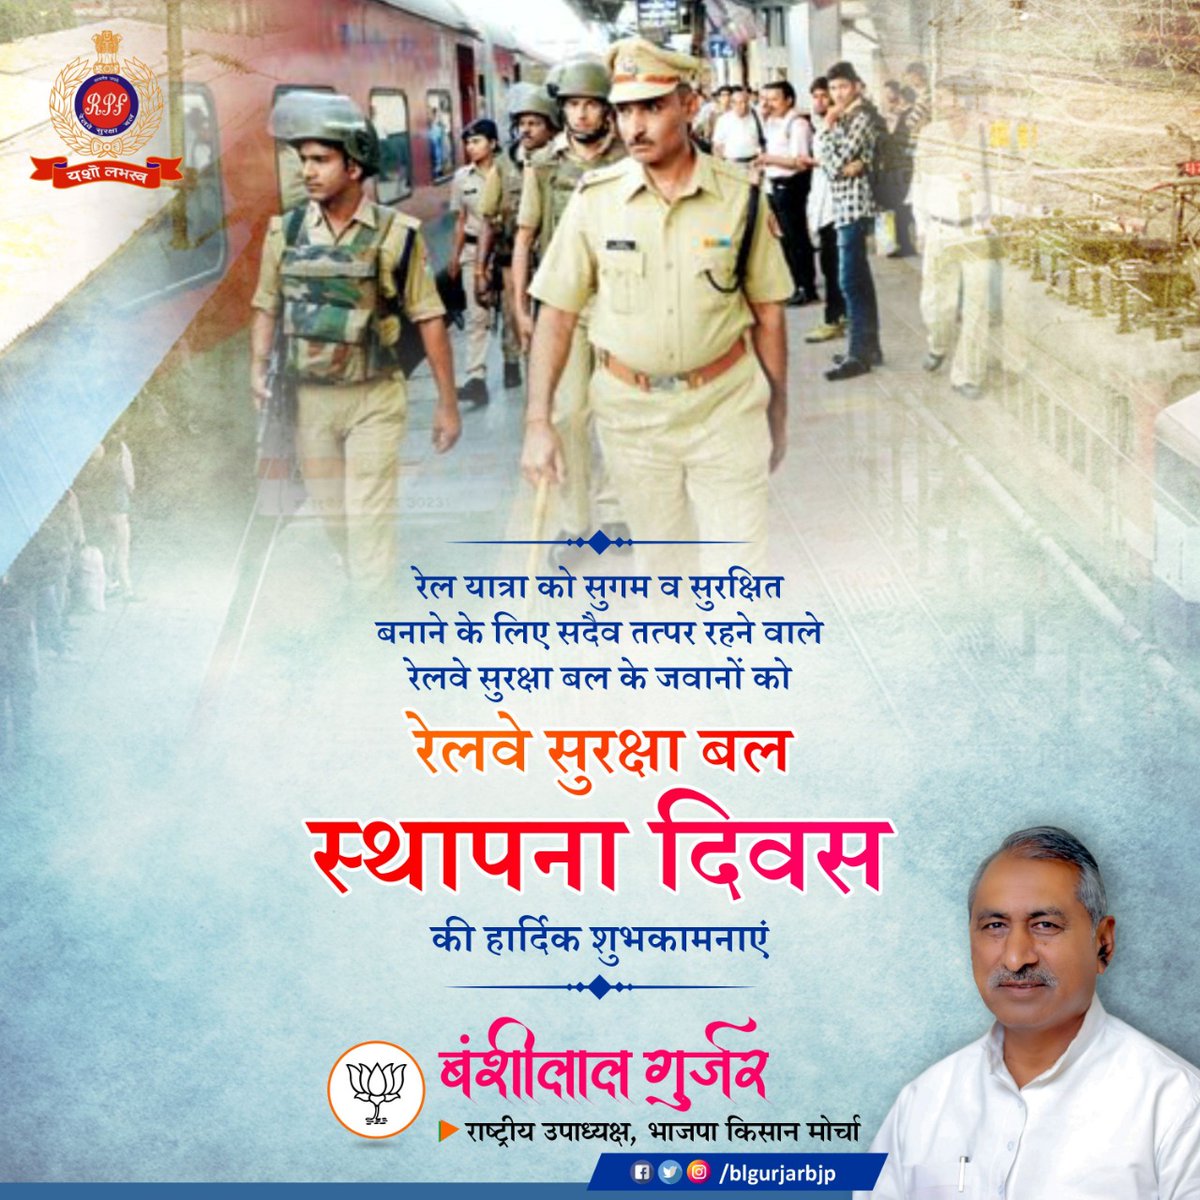 रेल यात्रा को सुगम व सुरक्षित बनाने के लिए प्रतिबद्ध आरपीएफ के जवानों को रेलवे सुरक्षा बल के स्थापना दिवस की हार्दिक बधाई एवं शुभकामनाएं। 
#RPFFoundationDay